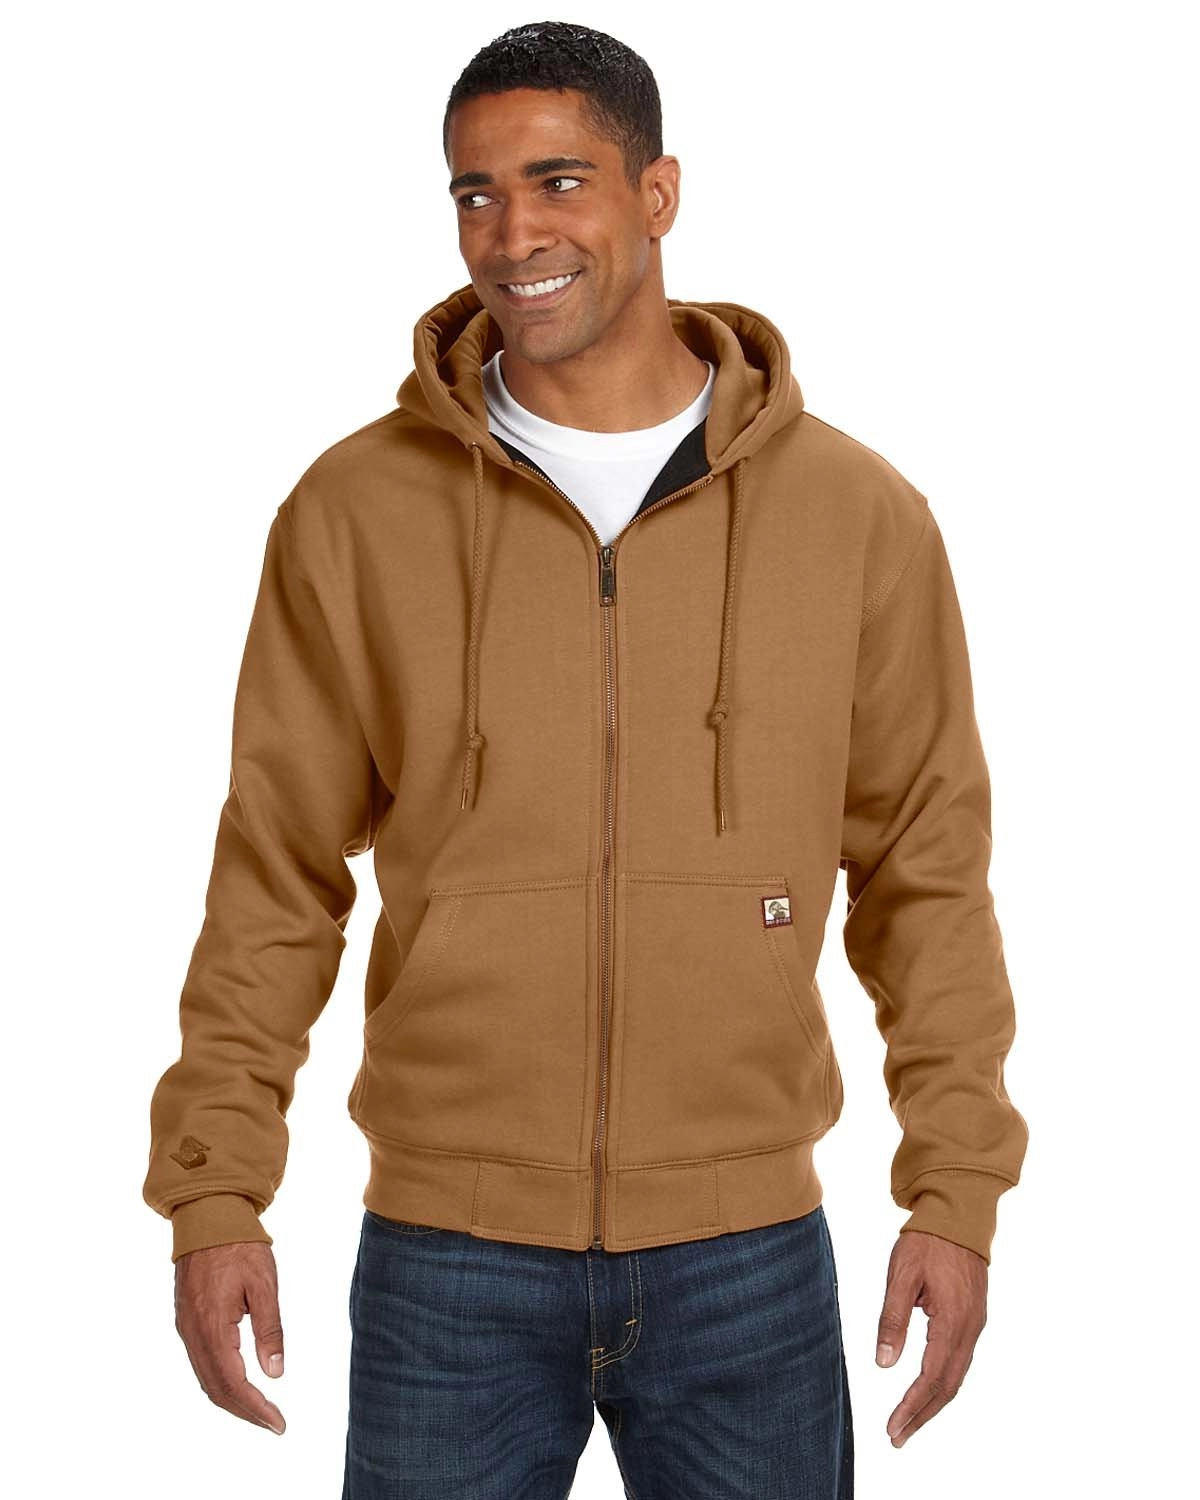 Zip Front Fleece Jacket-Cotton /Spandex Blend, Black, X-Large